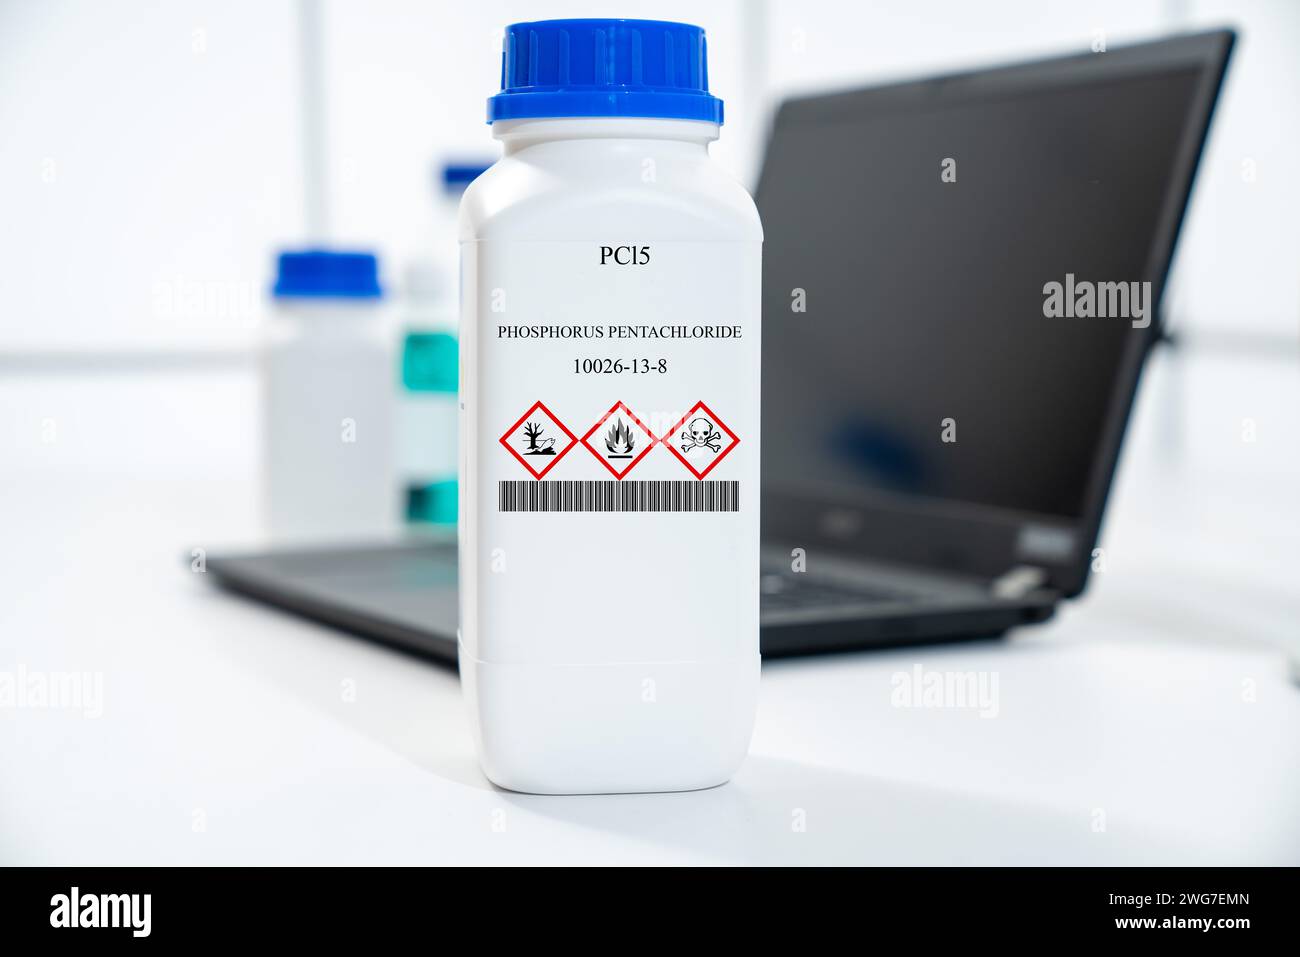 PCL5 pentachlorure de phosphore cas 10026-13-8 substance chimique dans un emballage de laboratoire en plastique blanc Banque D'Images